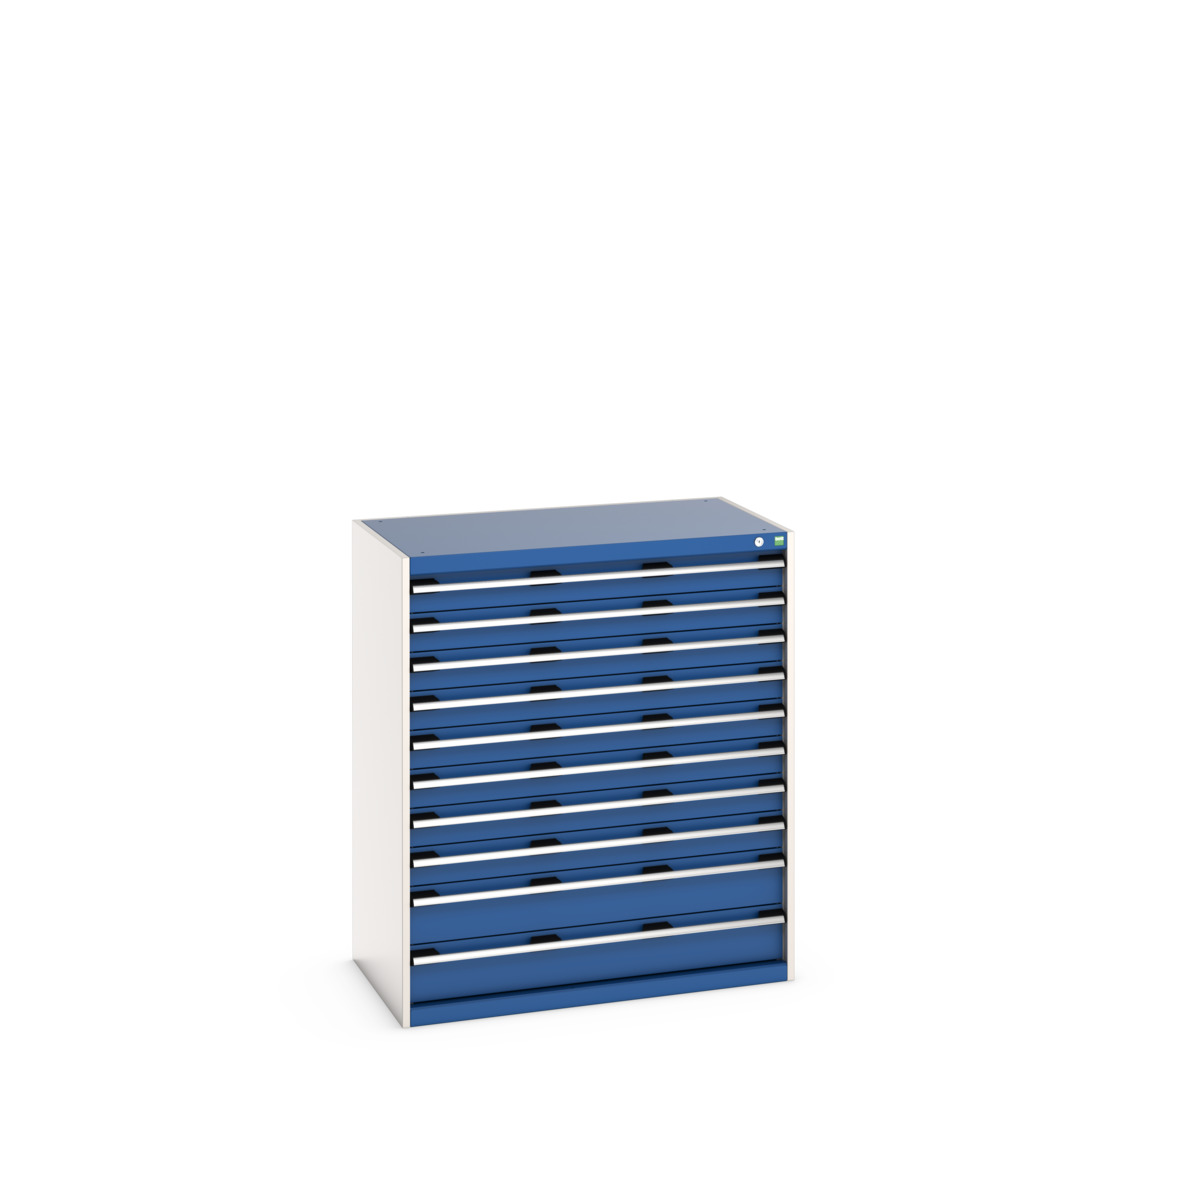 40021041.11V - cubio drawer cabinet